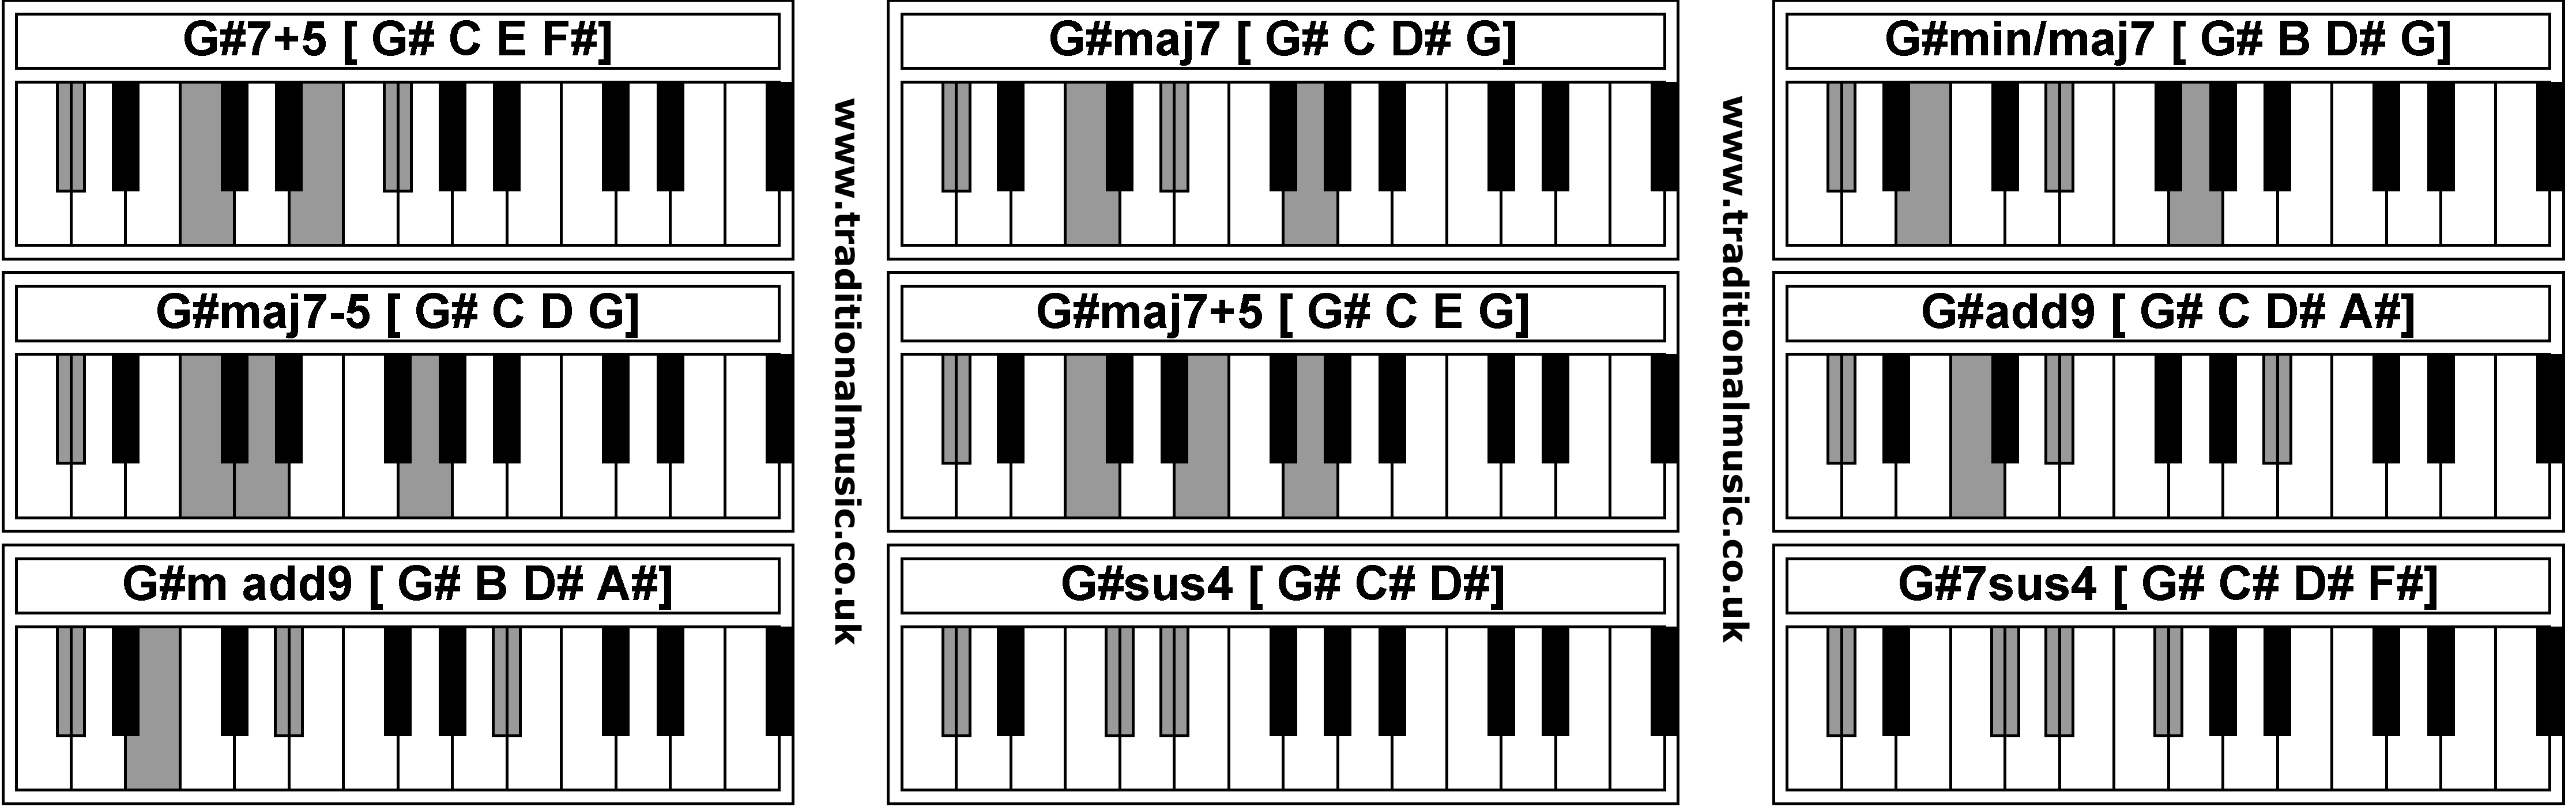 Piano Chords - G#7+5  G#maj7  G#min/maj7  G#maj7-5  G#maj7+5  G#add9  G#m add9  G#sus4  G#7sus4